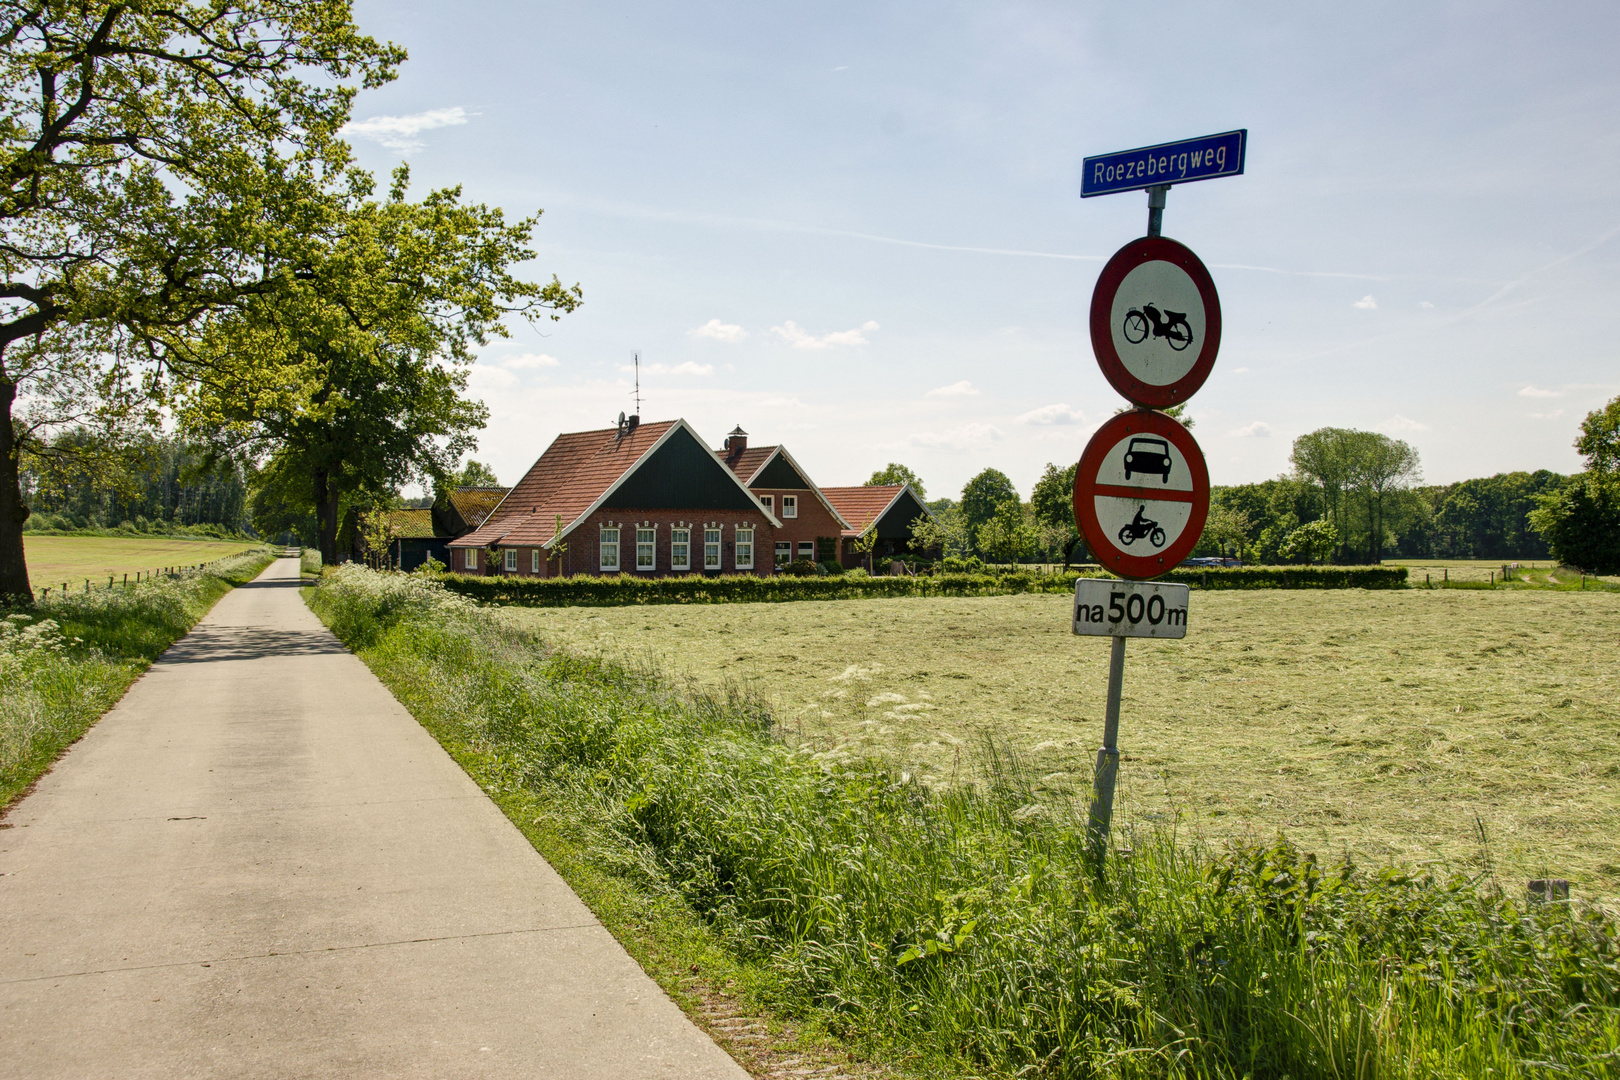 Between Ootmarsum and Vasse - Vasserweg - Roezebergweg - 02